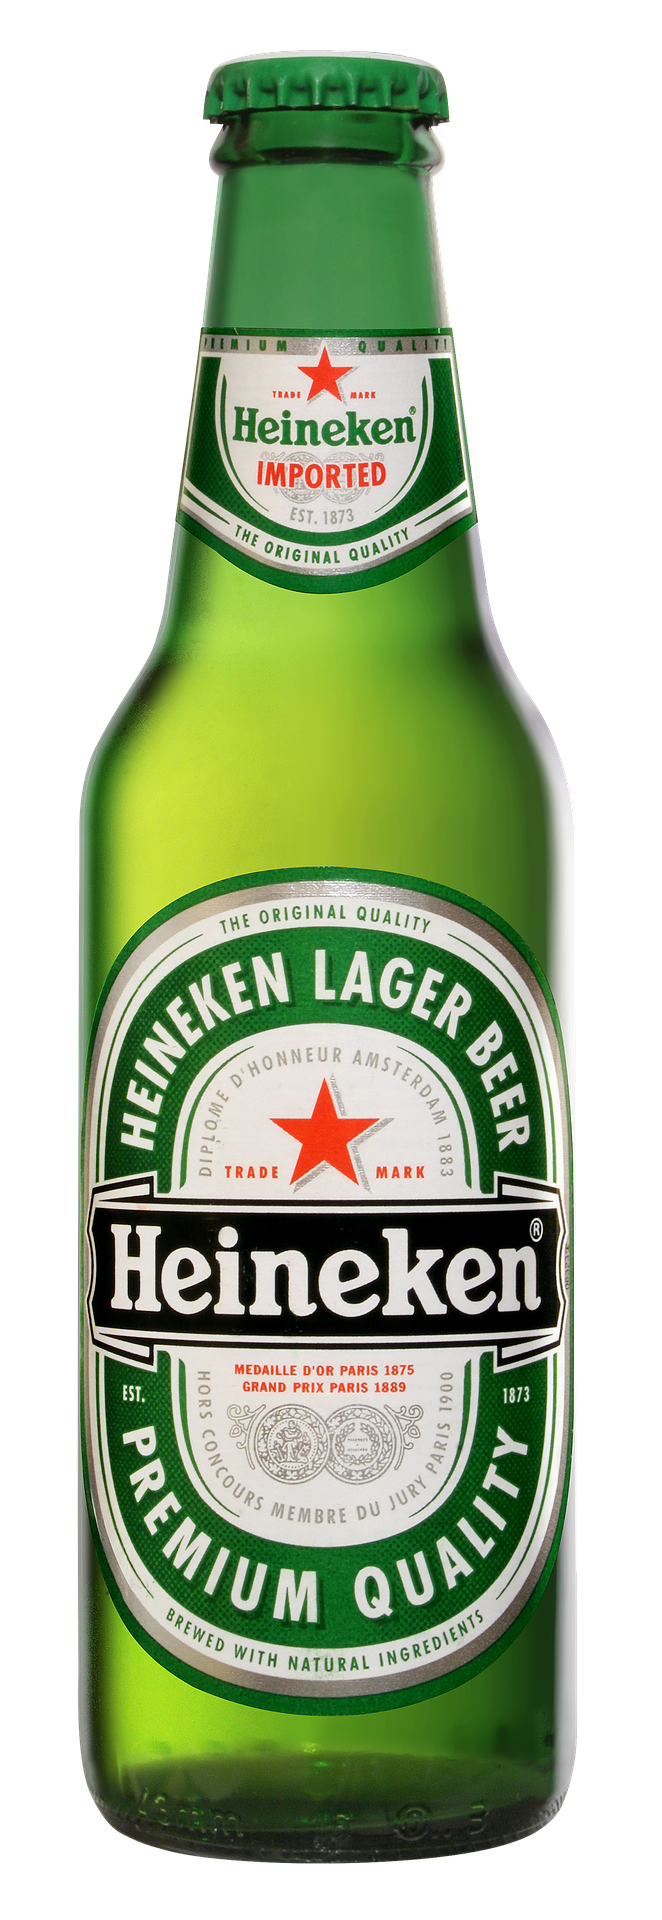 Appeler le service client de Heineken